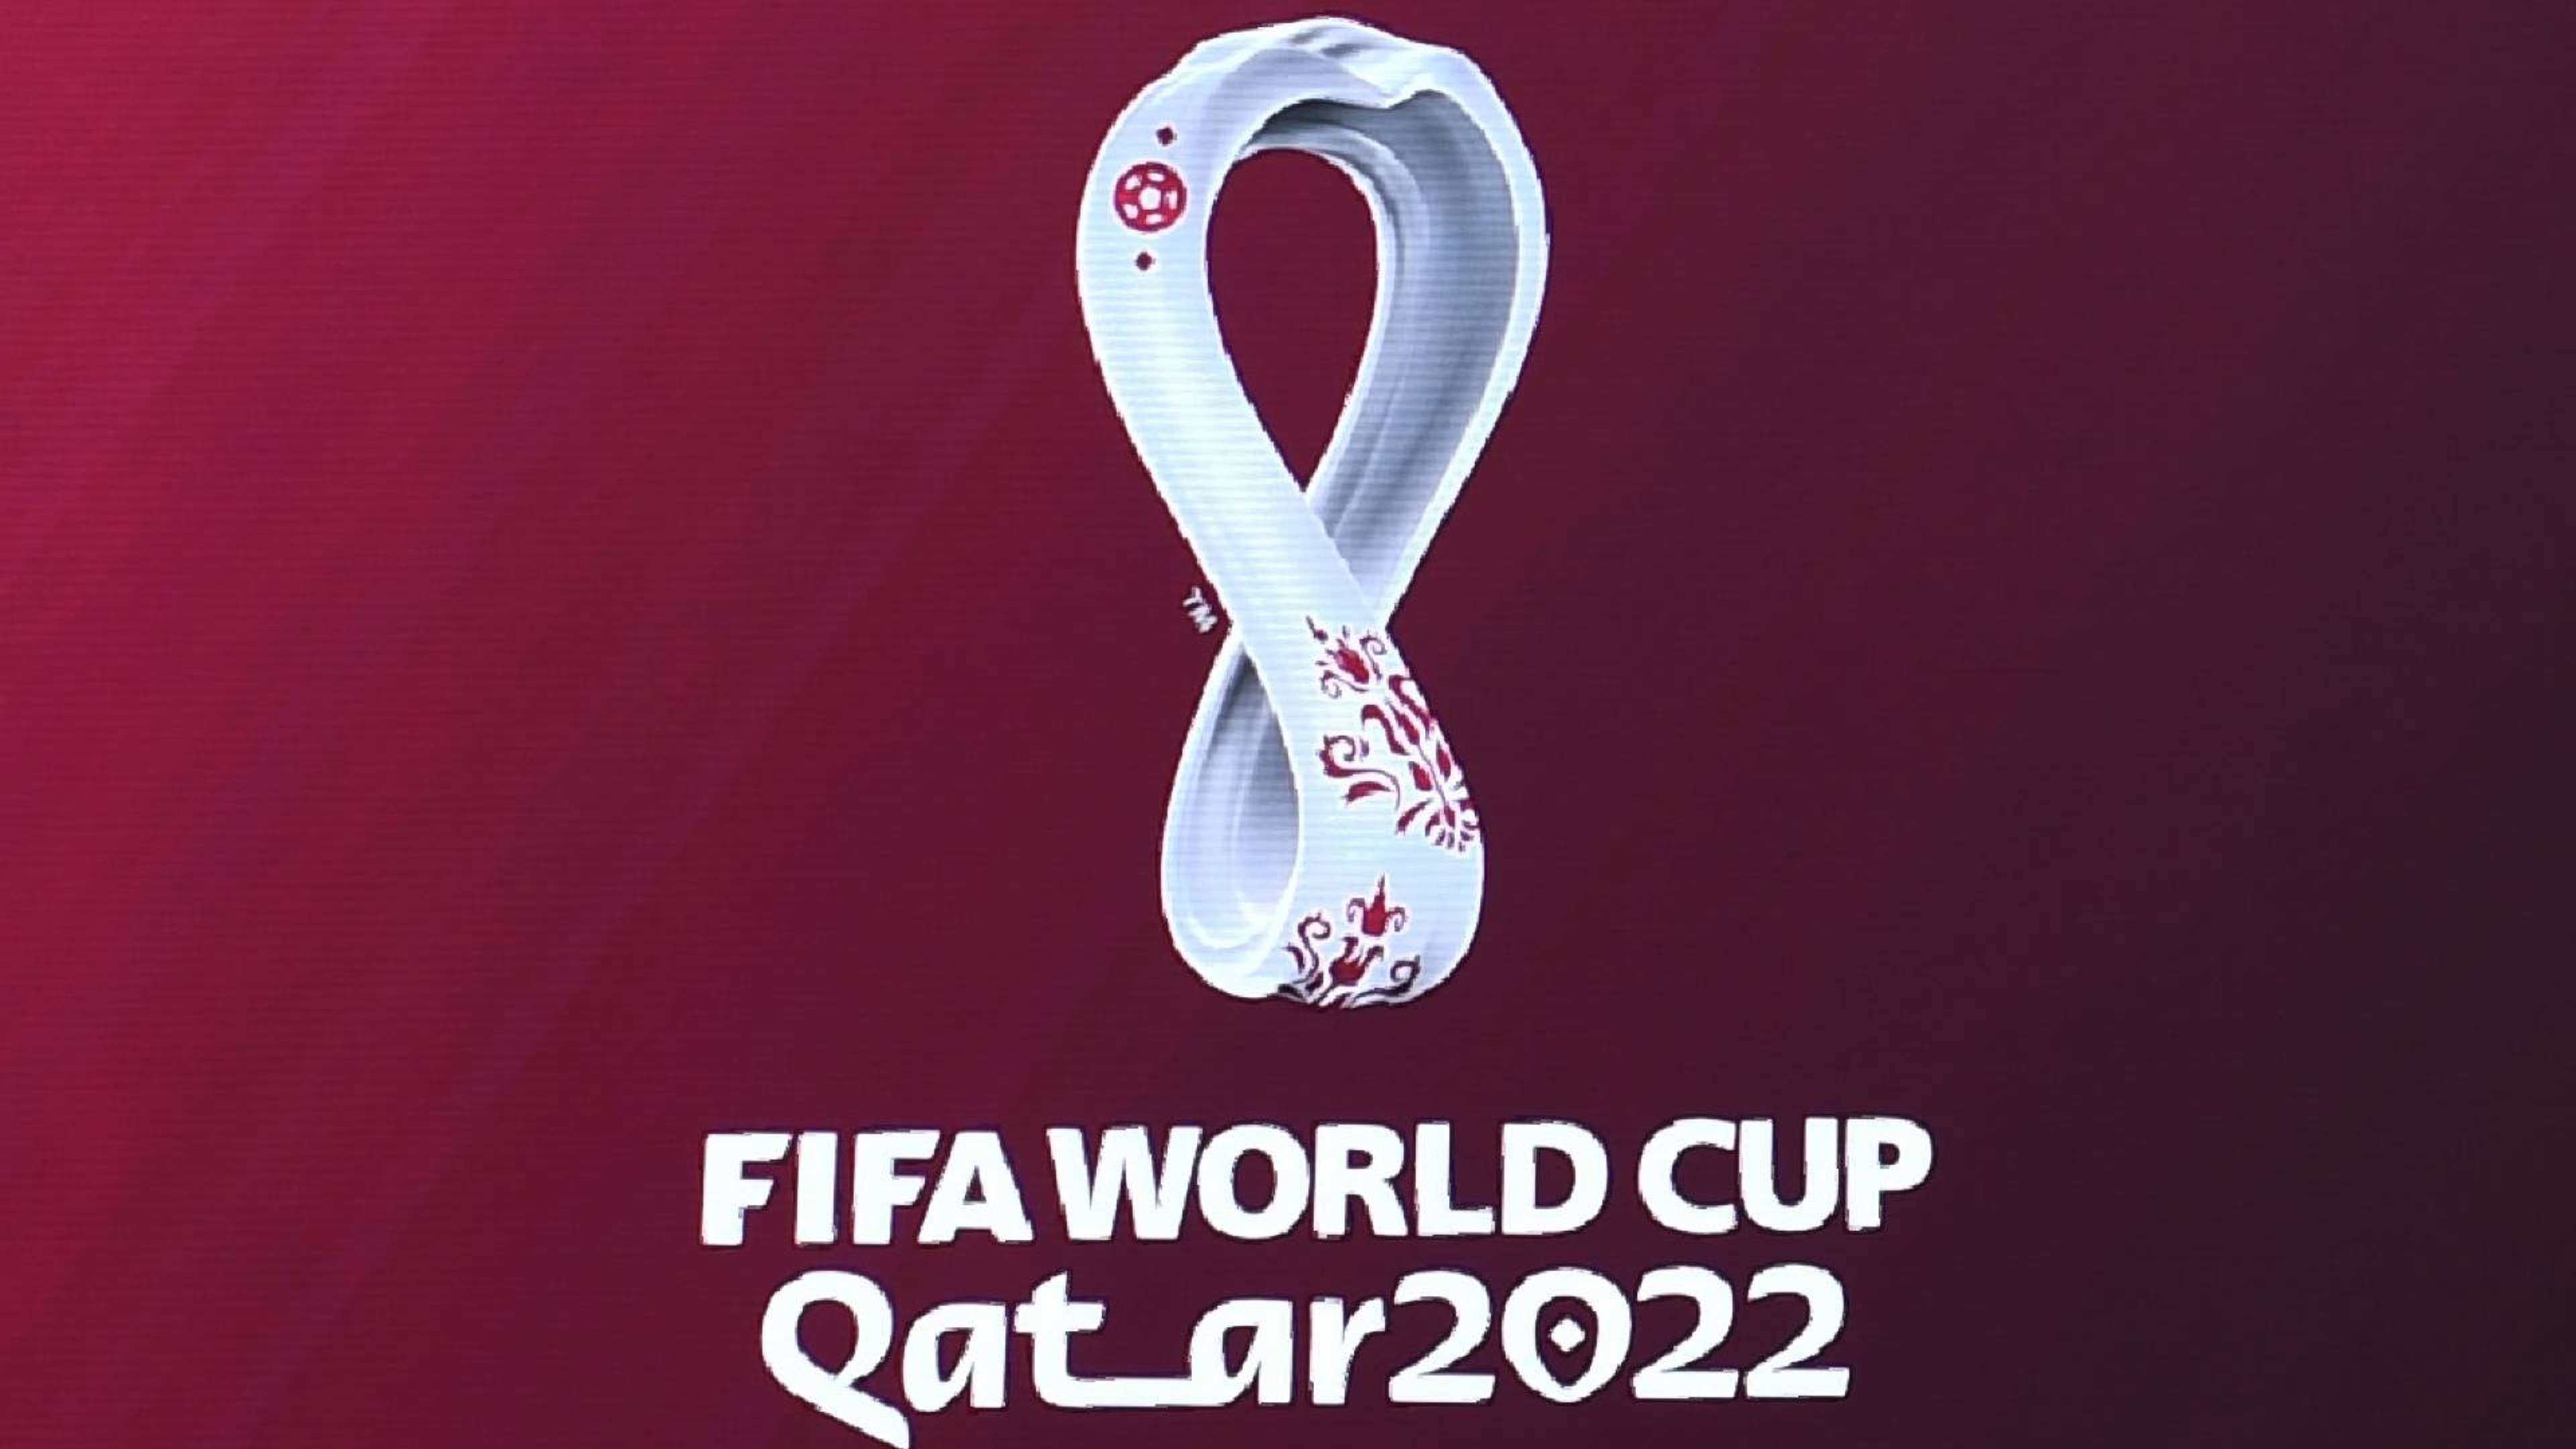 FIFA WM World Cup 2022 Katar Logo